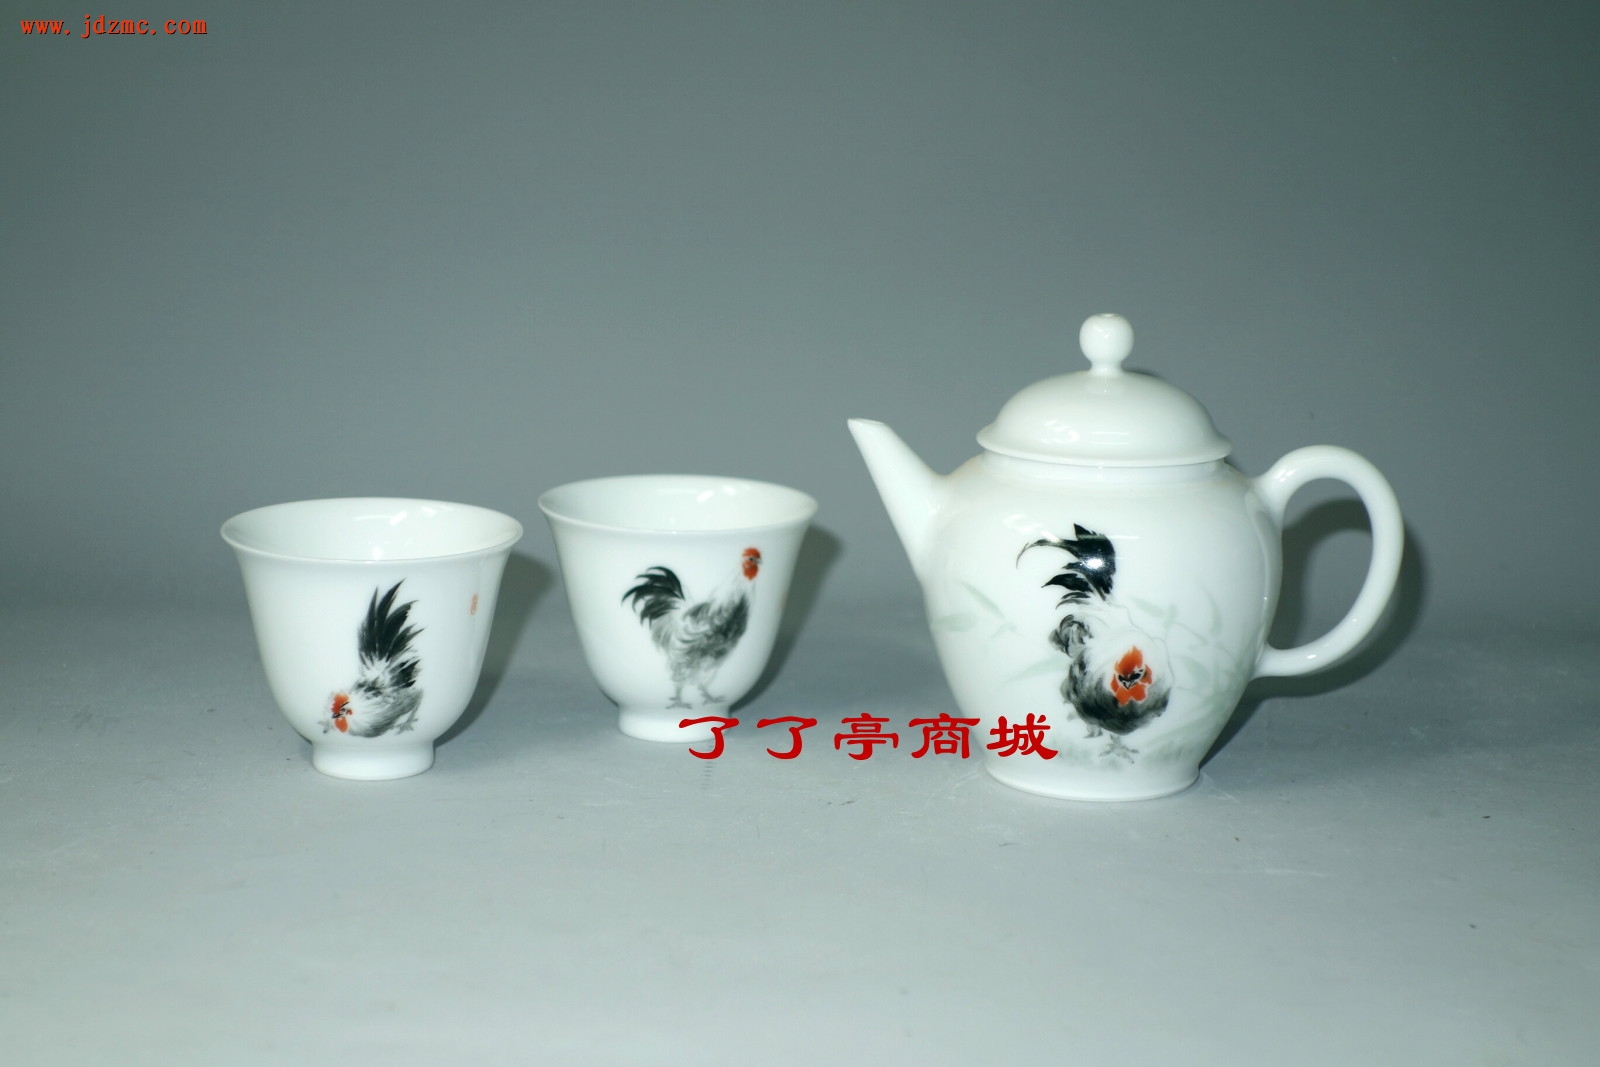 《鸡--吉》茶具，汪则东（高级工艺美术师，陶瓷内画家.）工作室作品